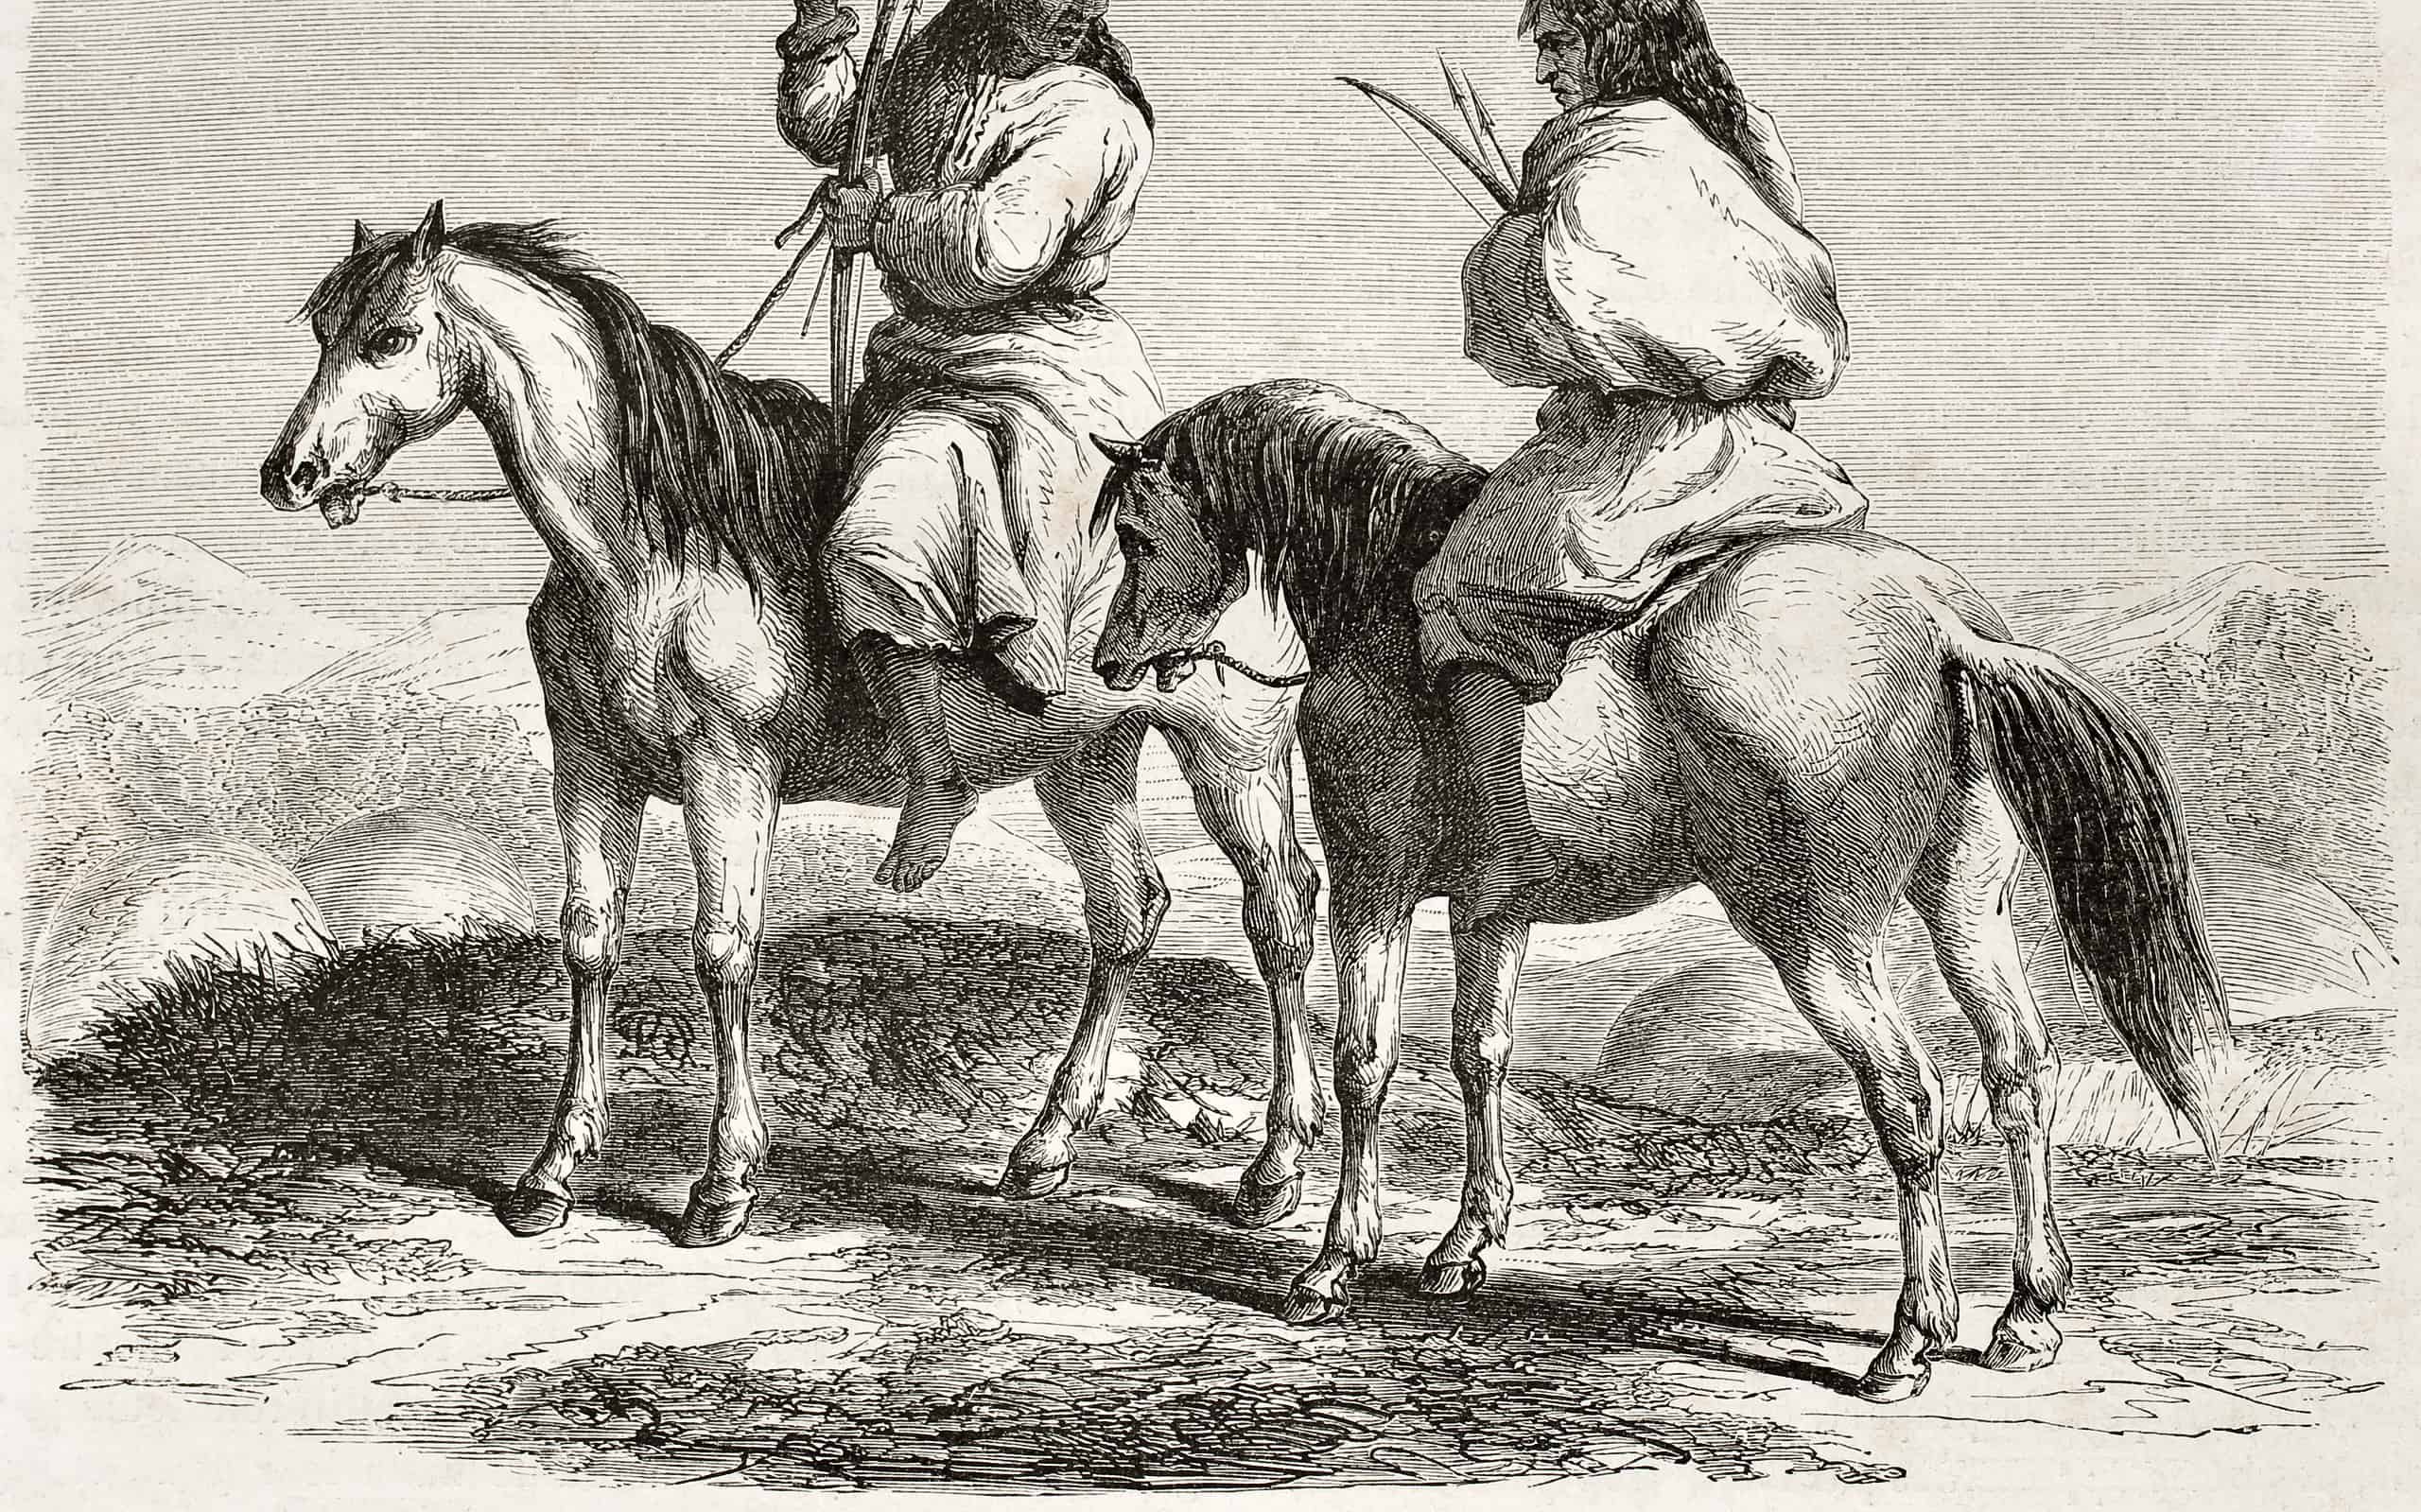 Vecchia illustrazione del popolo Comanche a cavallo.  Creato da Duveaux dopo un rapporto redatto sotto la direzione del segretario alla guerra degli Stati Uniti.  Pubblicato su Le Tour du Monde, Parigi, 1860